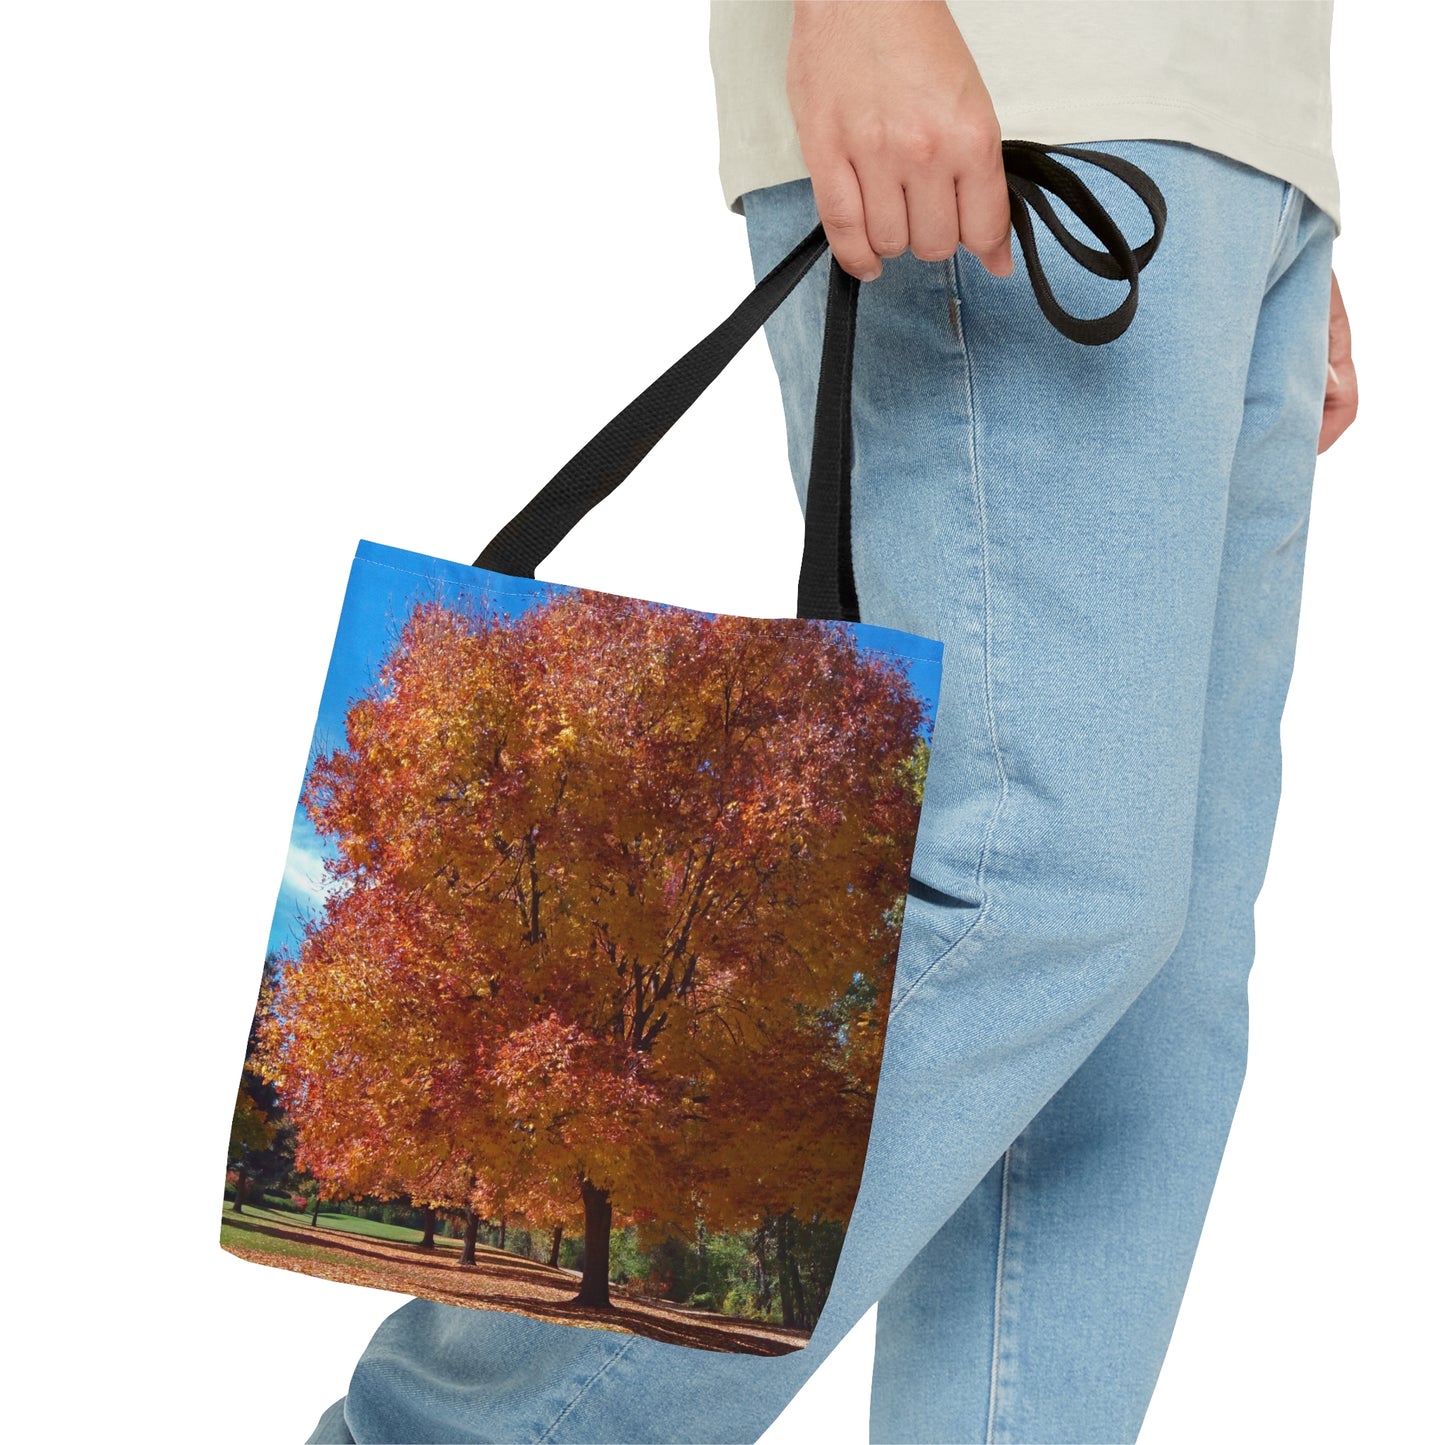 Autumn Tree Late Fall Tote Bag